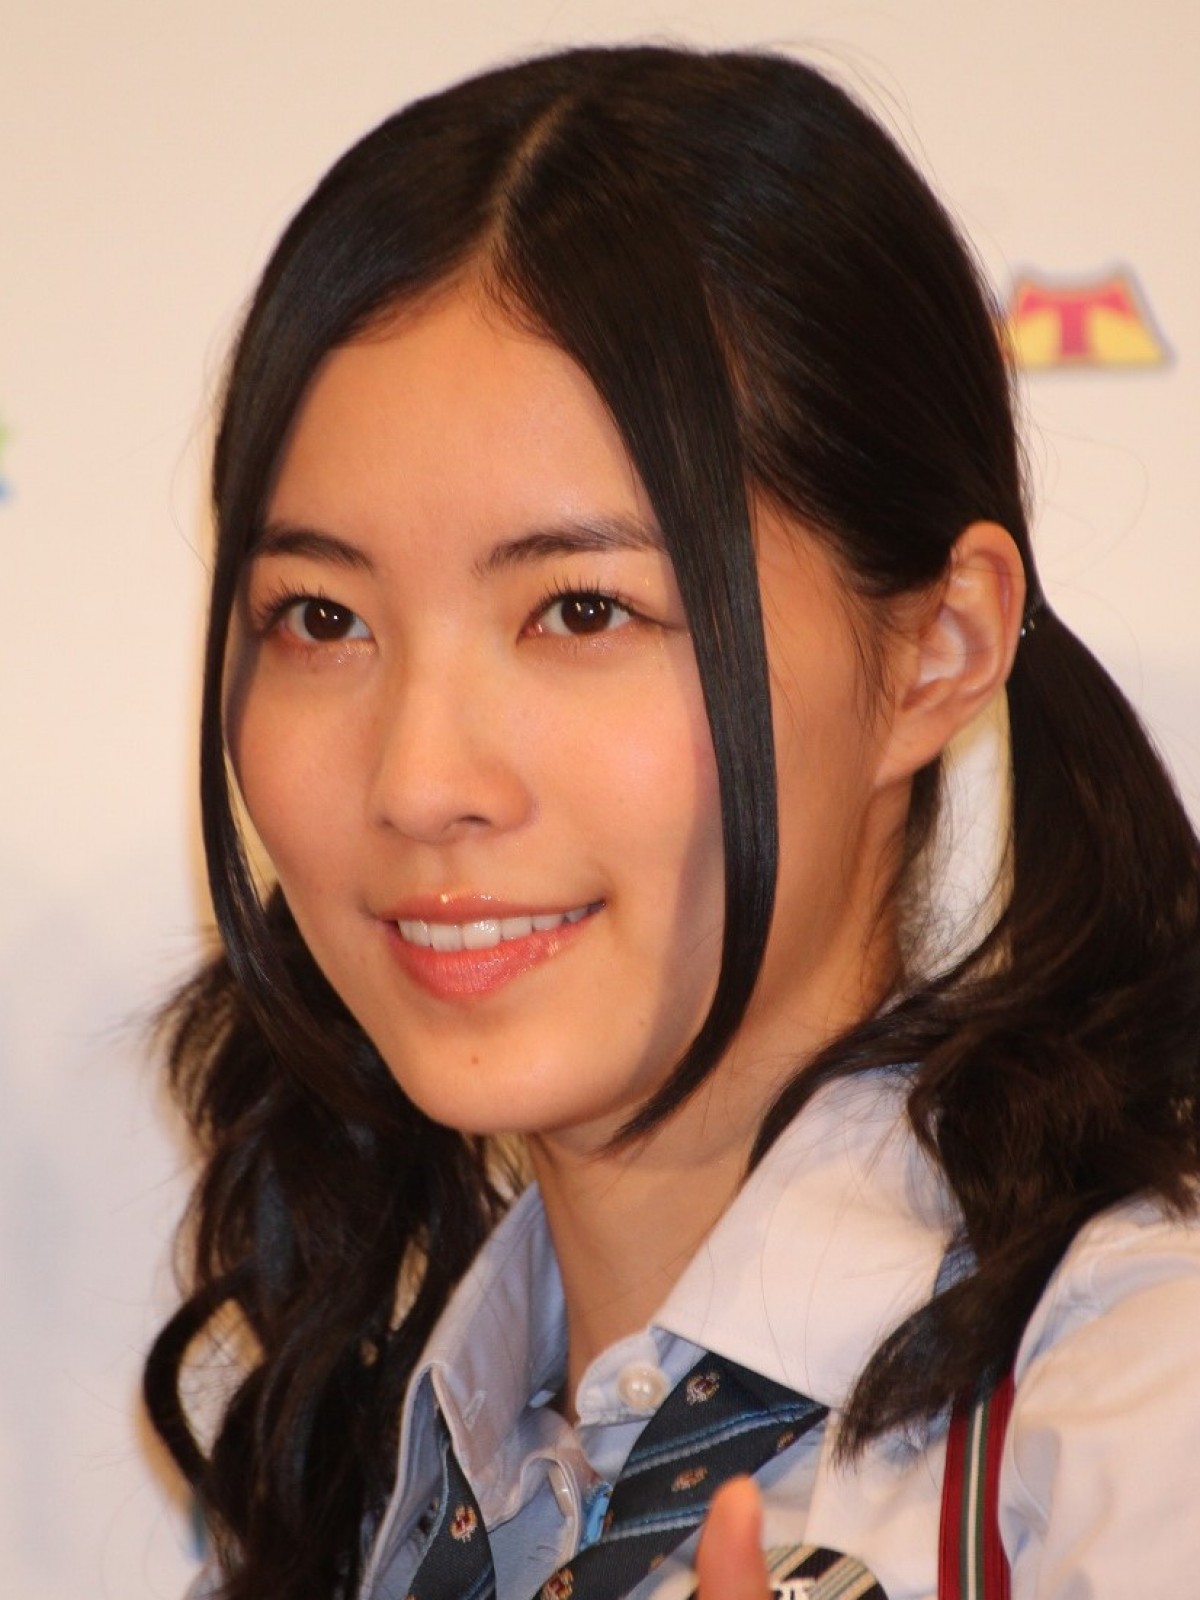 松井珠理奈、SKE48卒業ラッシュも「まだまだ頑張らなくちゃ」強く決意